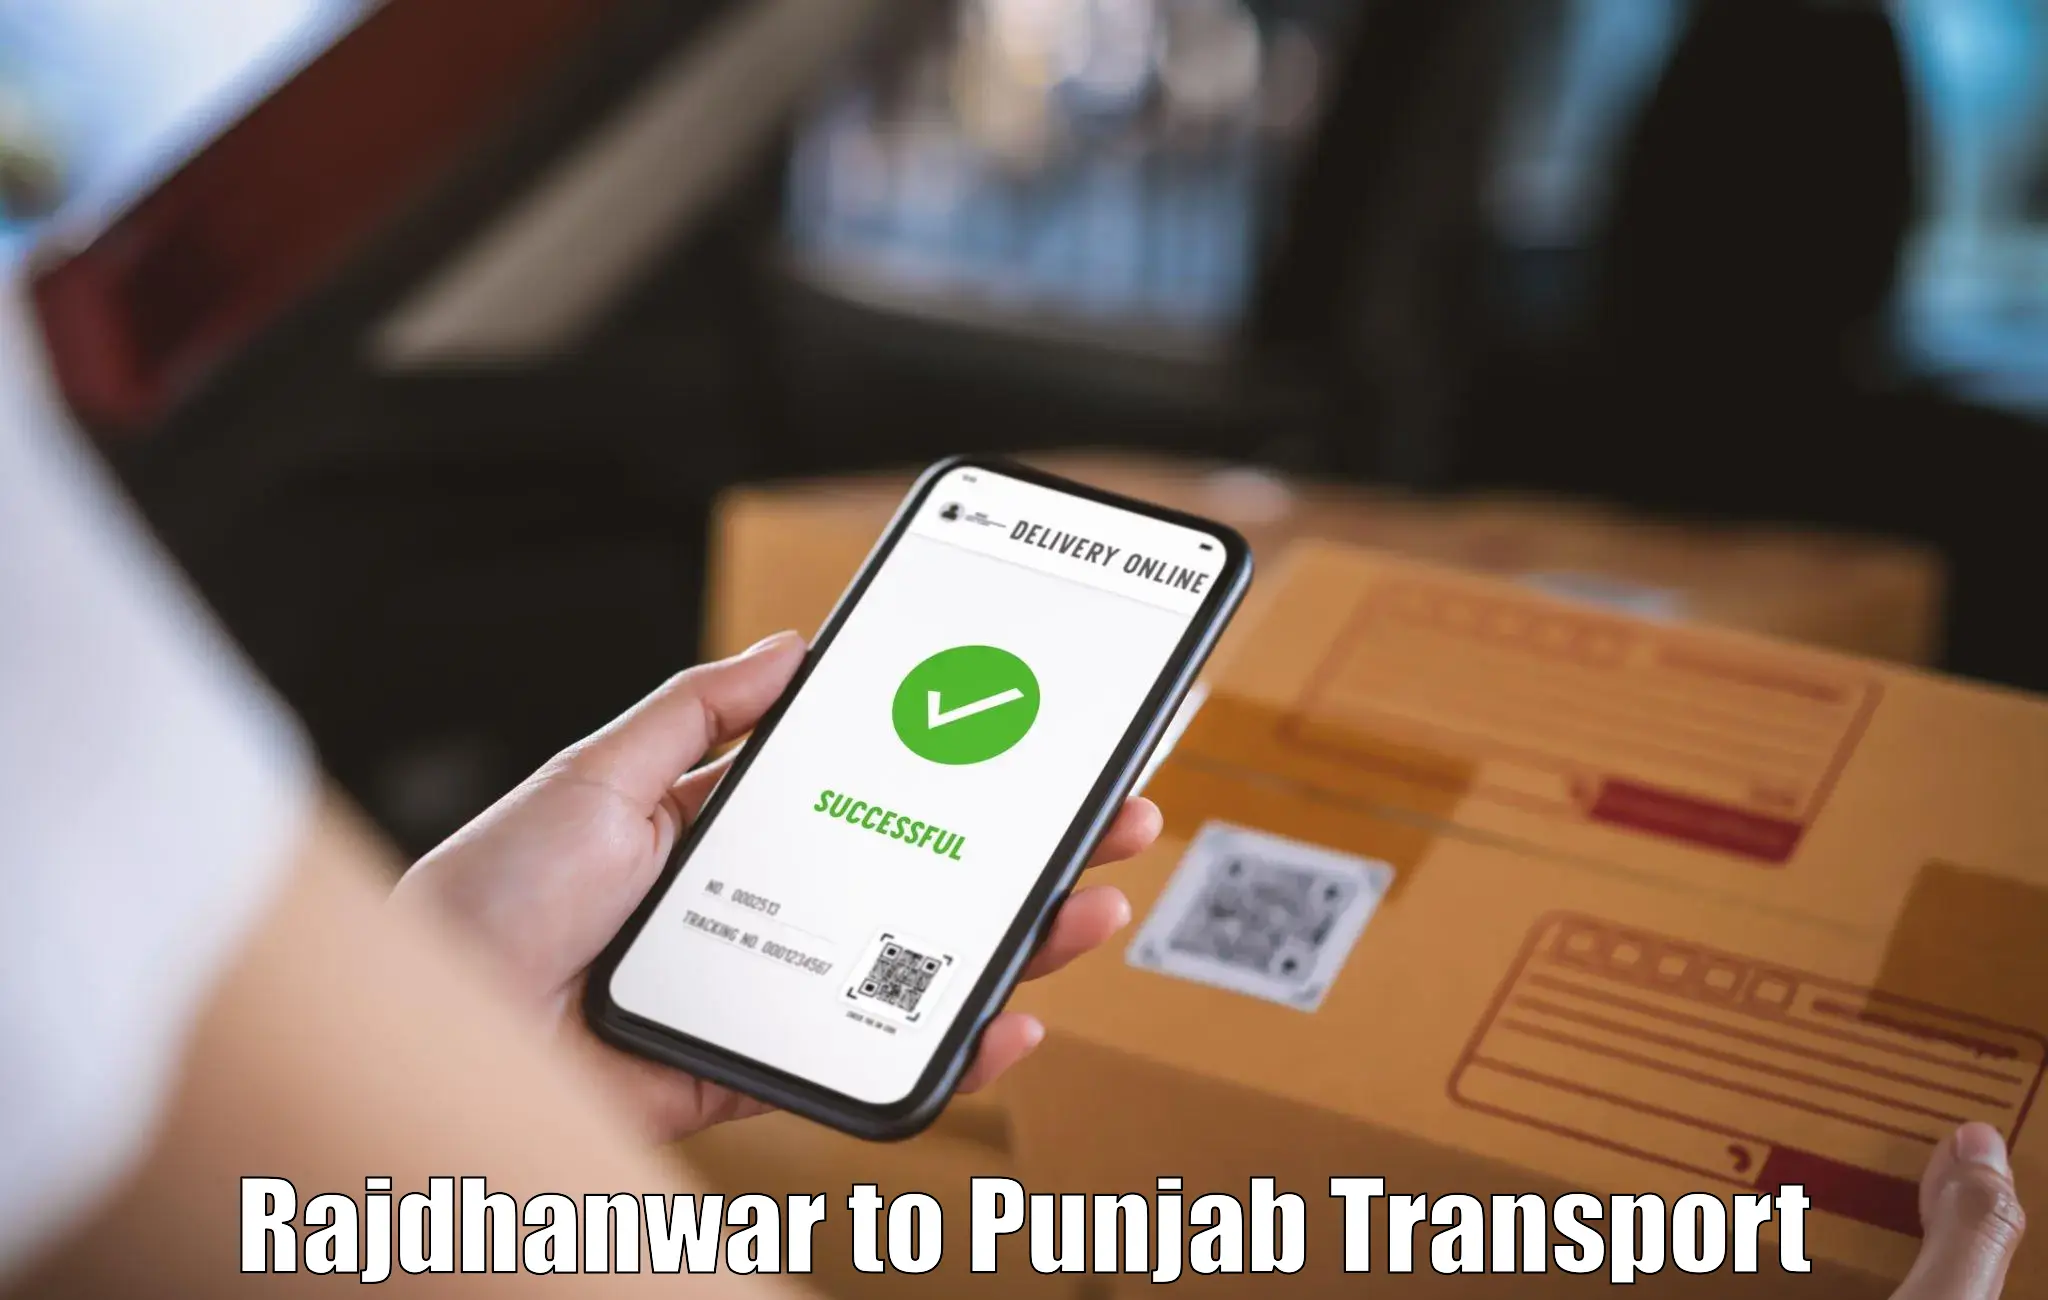 Bike shipping service Rajdhanwar to Punjab